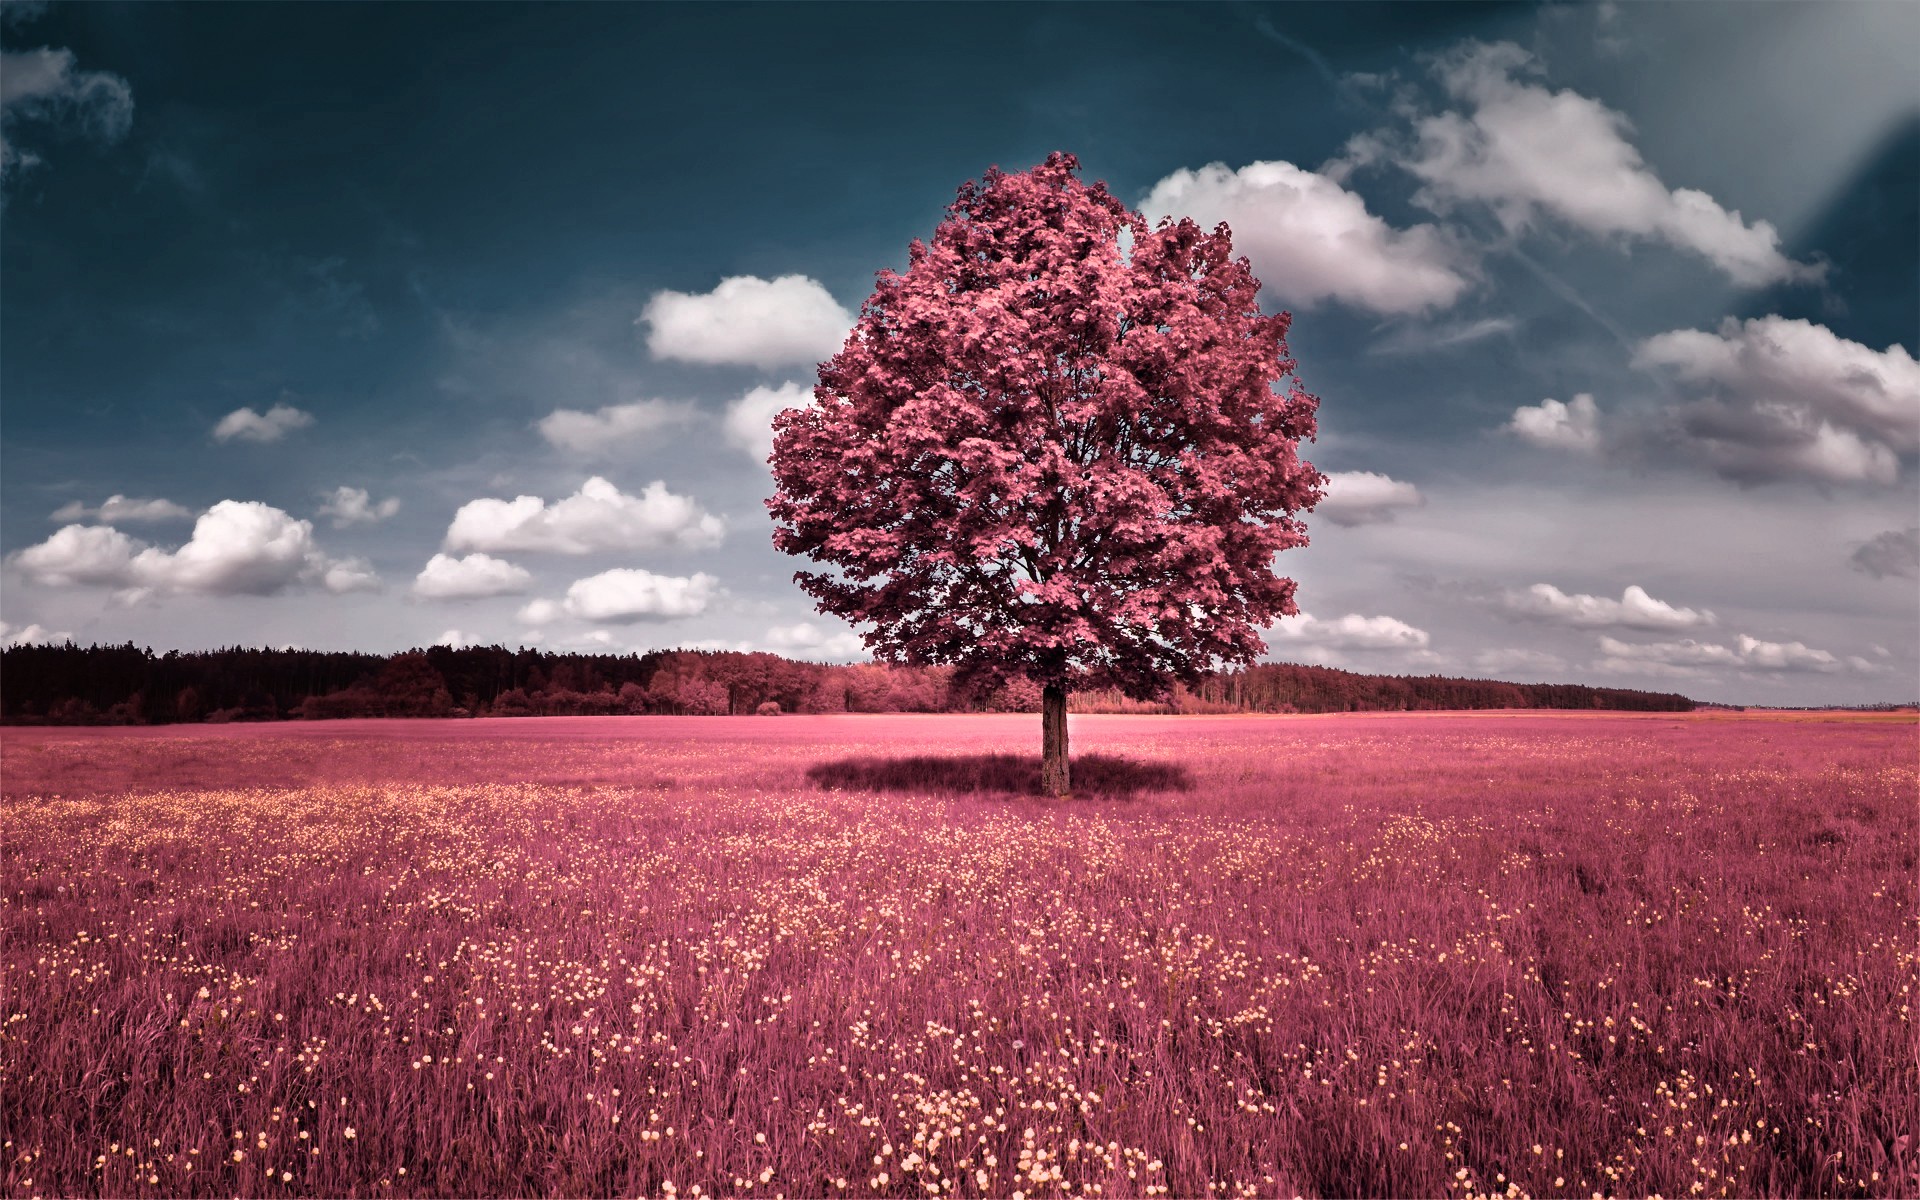 облака, пейзажи, деревья, цветы, розовый цвет, трава, поля, холмы, небо, фото манипуляции - обои на рабочий стол